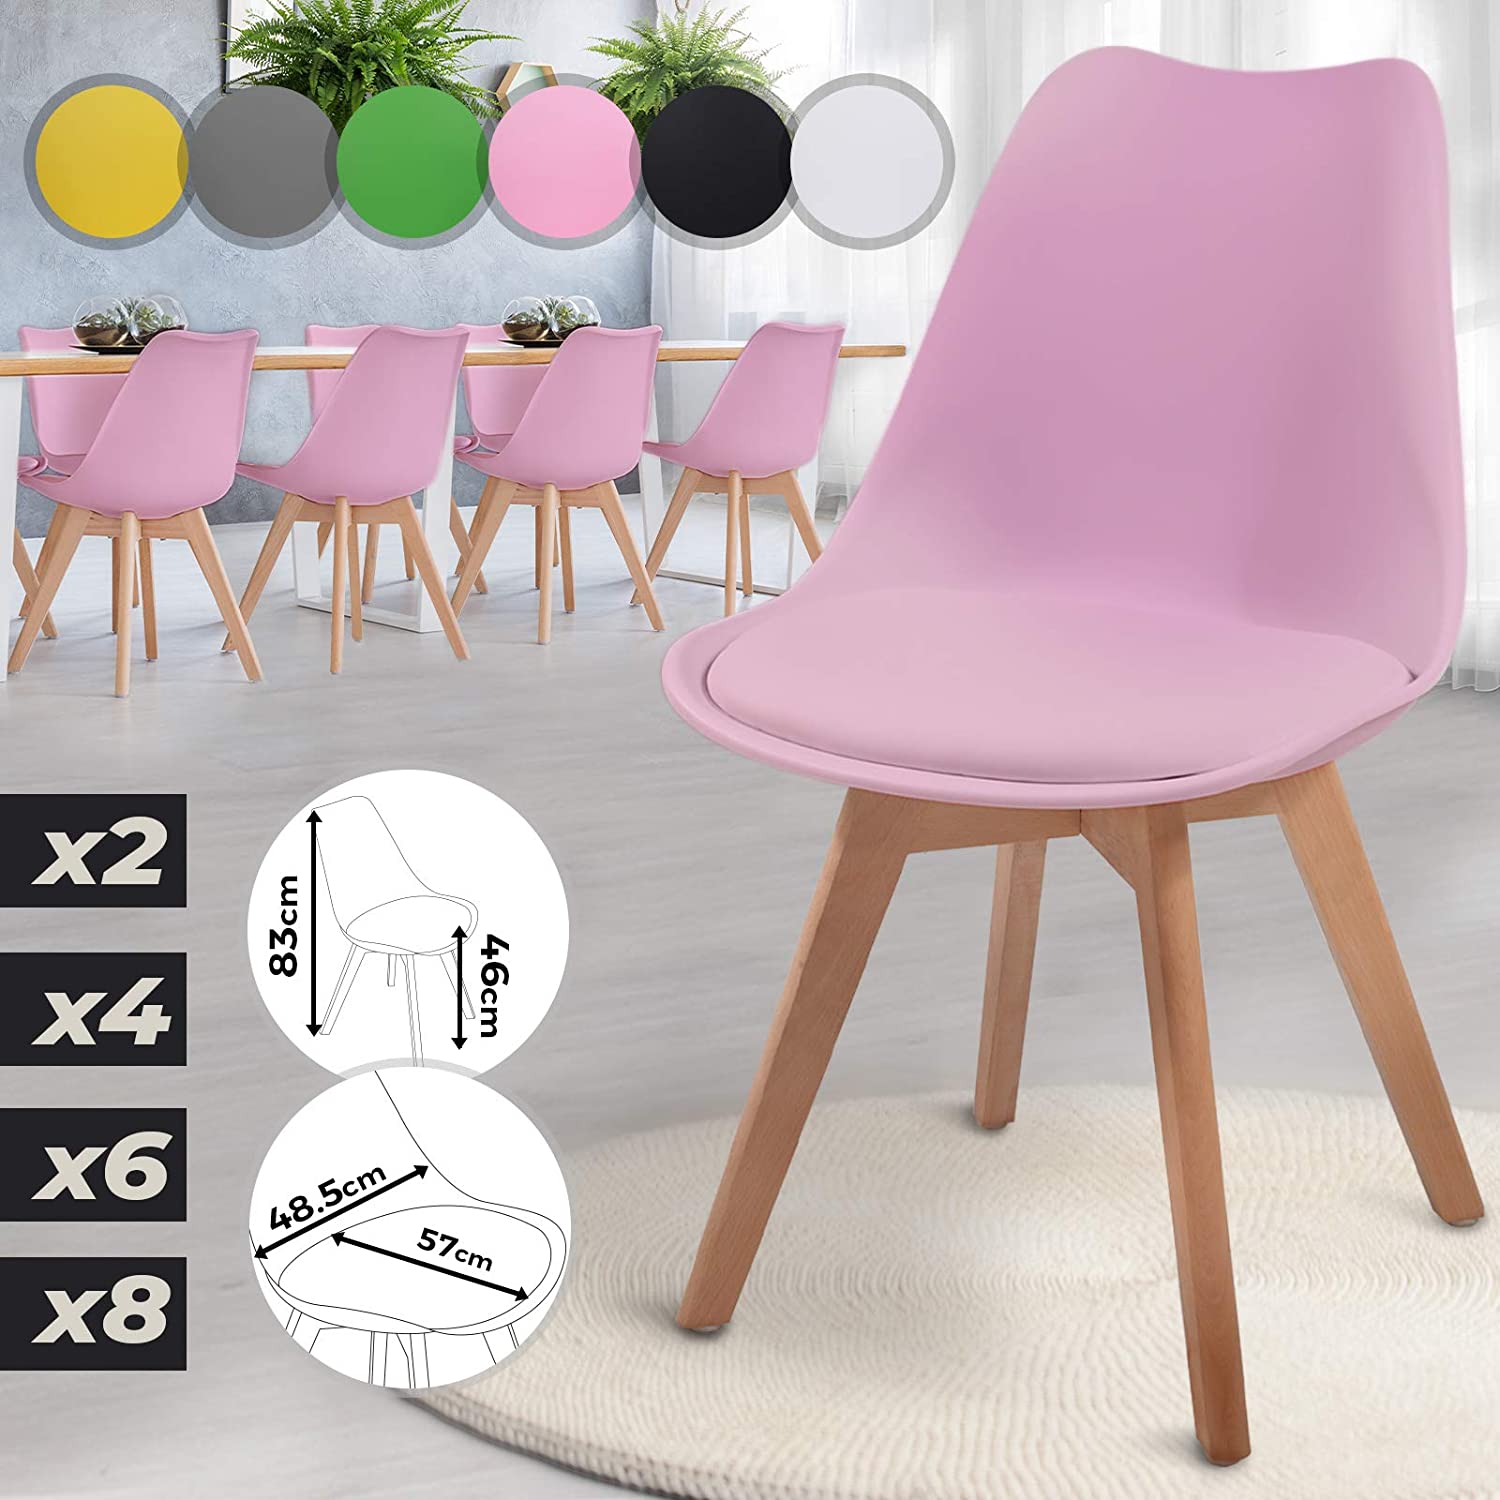 Eetkamerstoelen – Lounge stoelen – Scandinavische stijl – Retro – Vintage – Gestoffeerd – Set van 8 – Roze